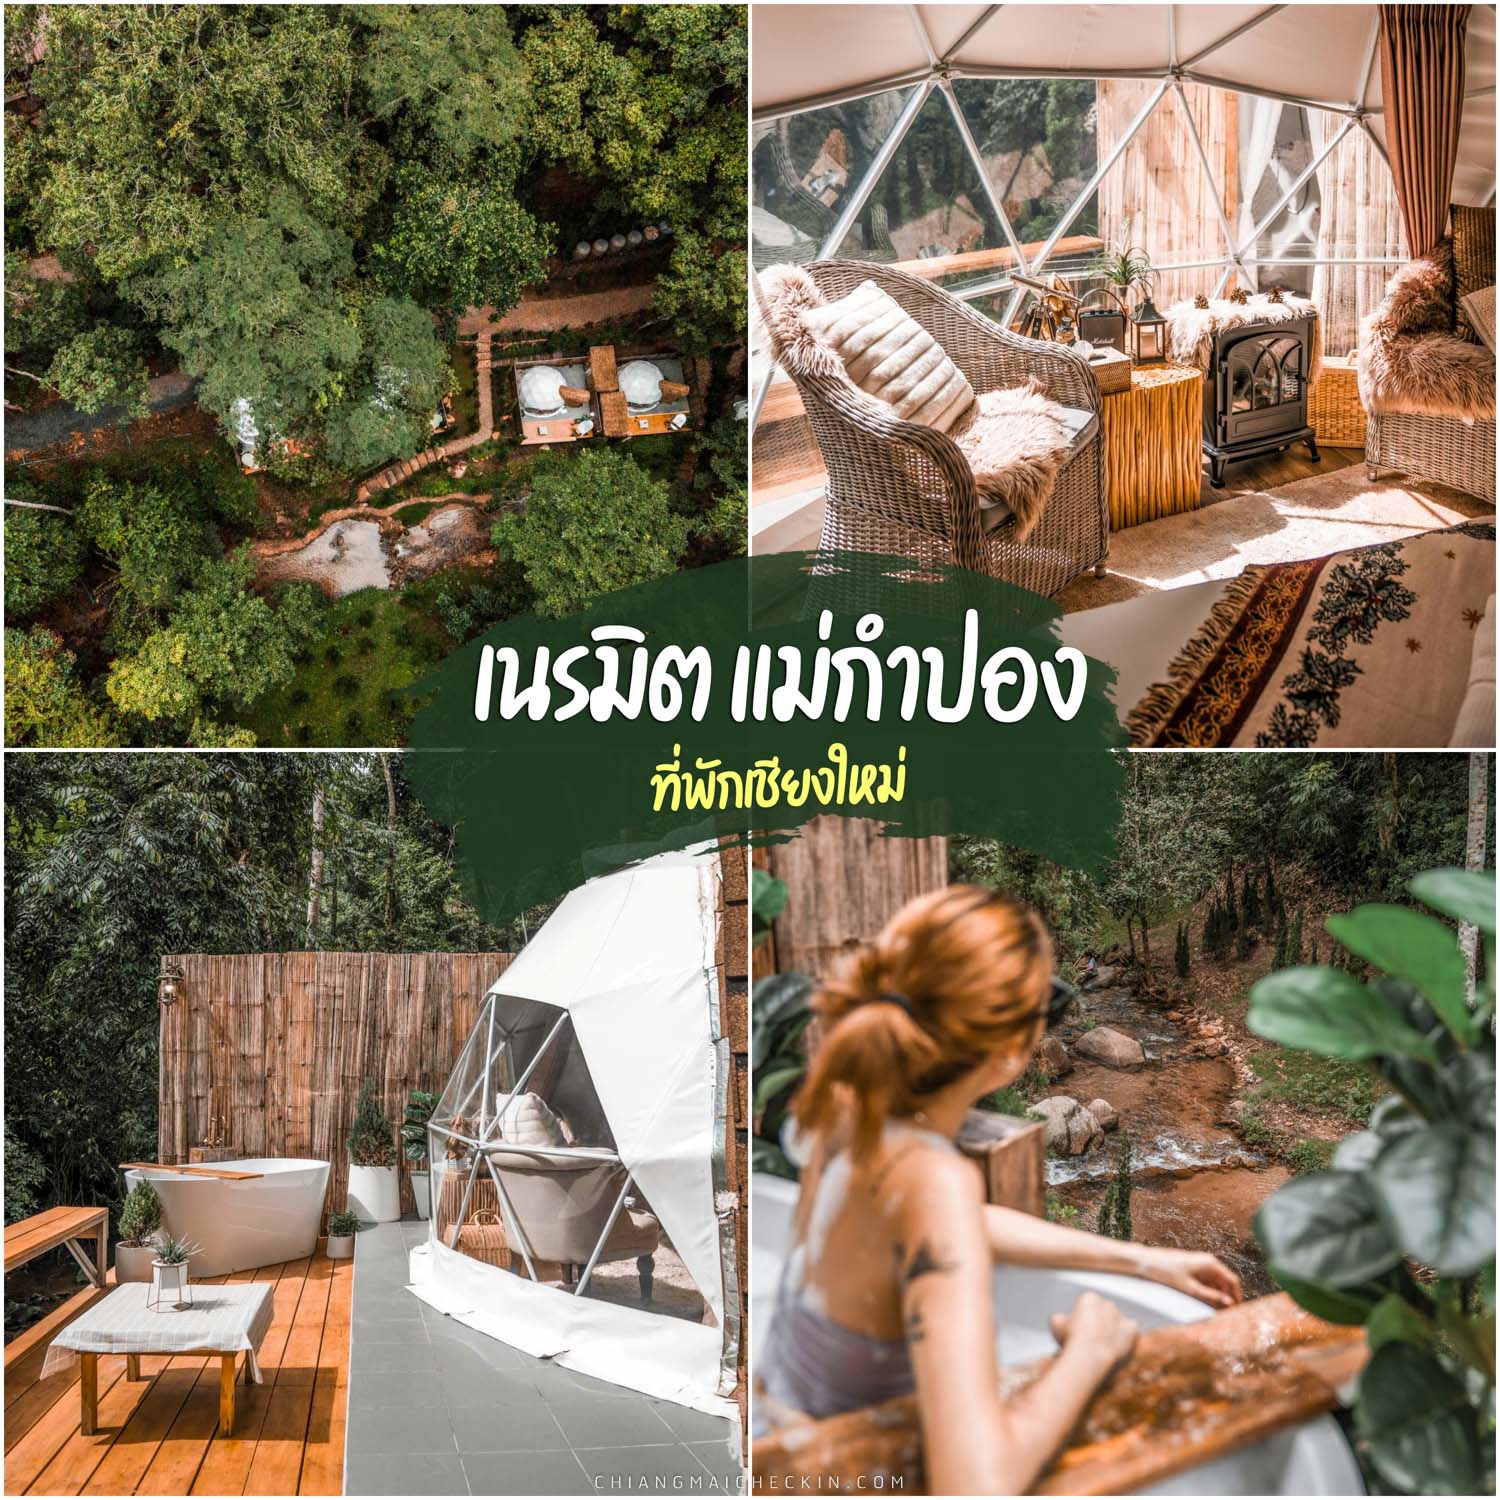 Создайте Мае Кампонг, место для отдыха в Чиангмае, чрезвычайно красивое, красивая природа, как полет в чужую страну, очень роскошная.